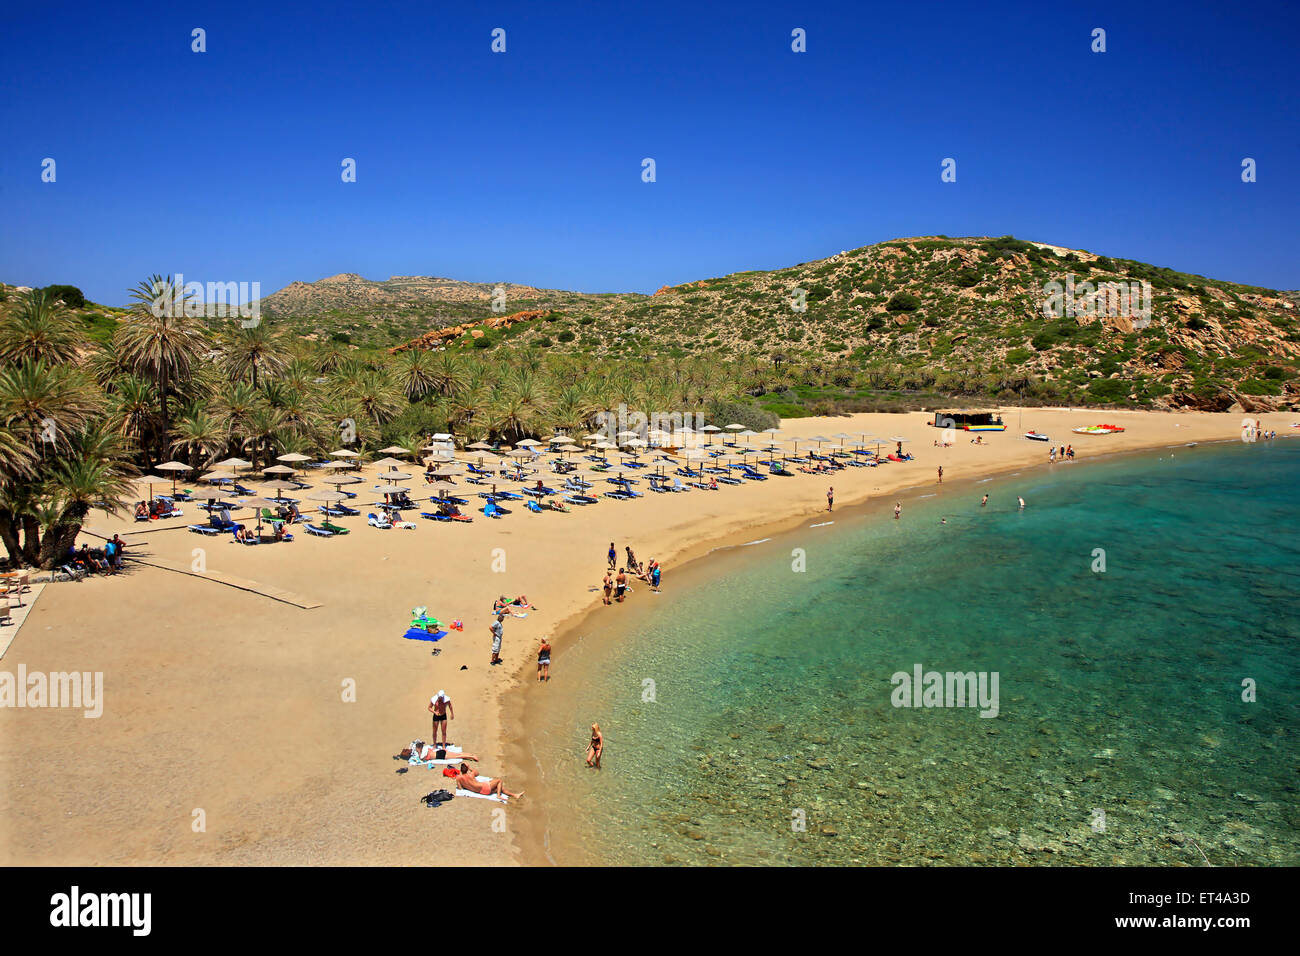 Vai spiaggia, famosa per le sue uniche Palm tree forest, vicino alla città di Sitia, prefettura di Lasithi, a est di Creta, Grecia Foto Stock